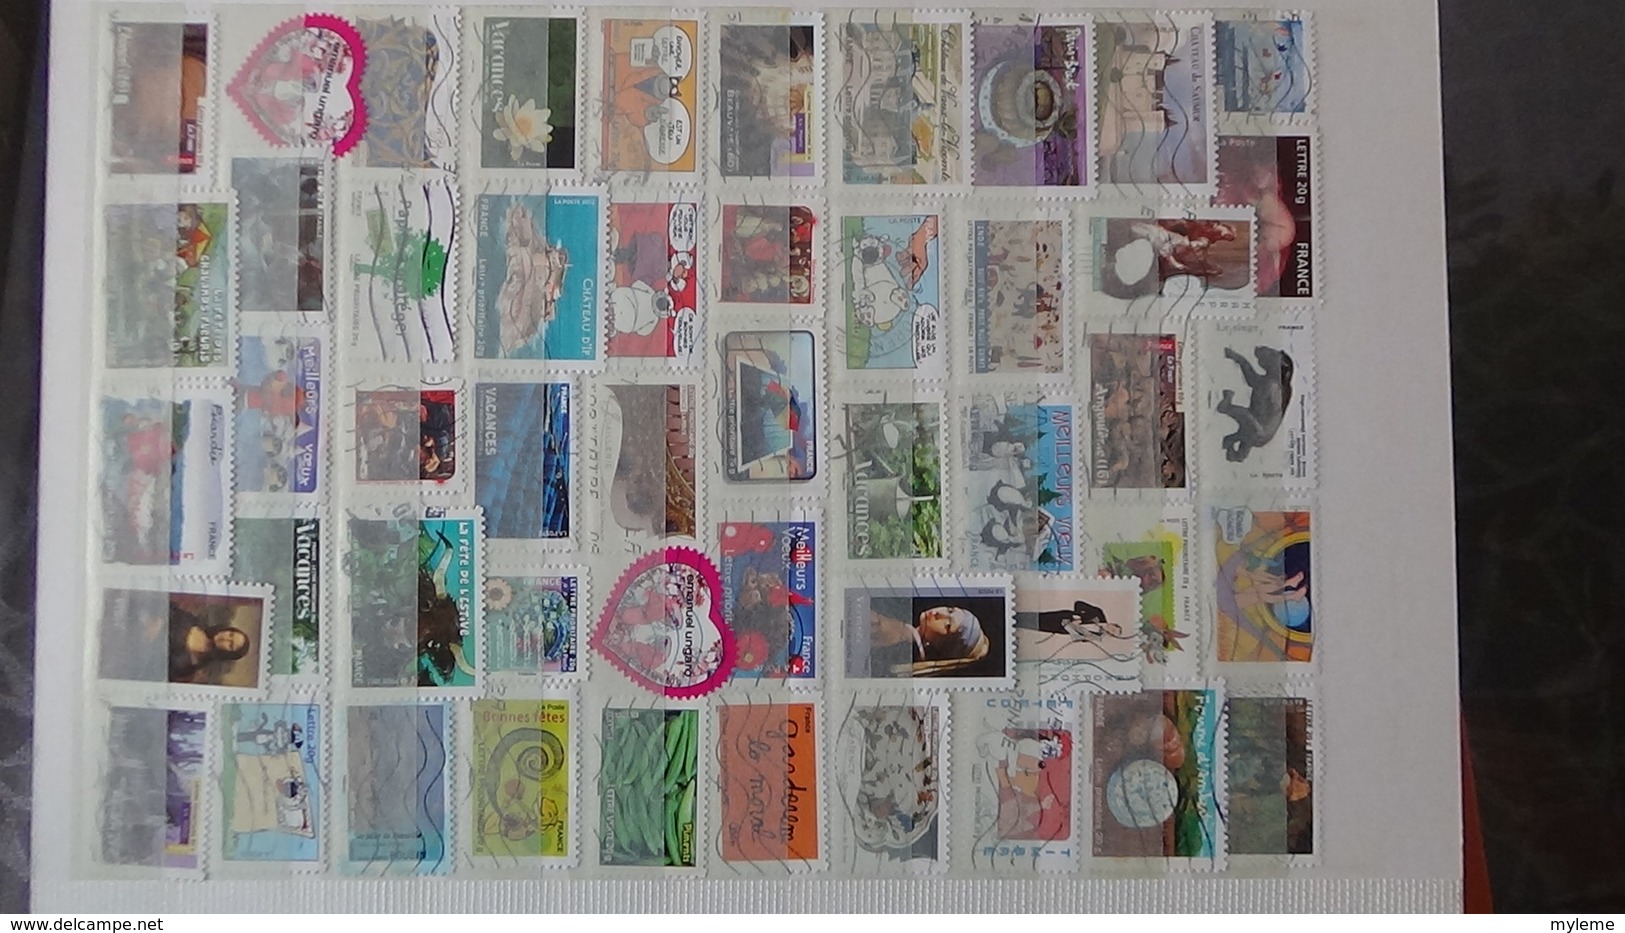 Plus de 780 timbres autocollants de France oblitérés. A saisir à ce prix !!!